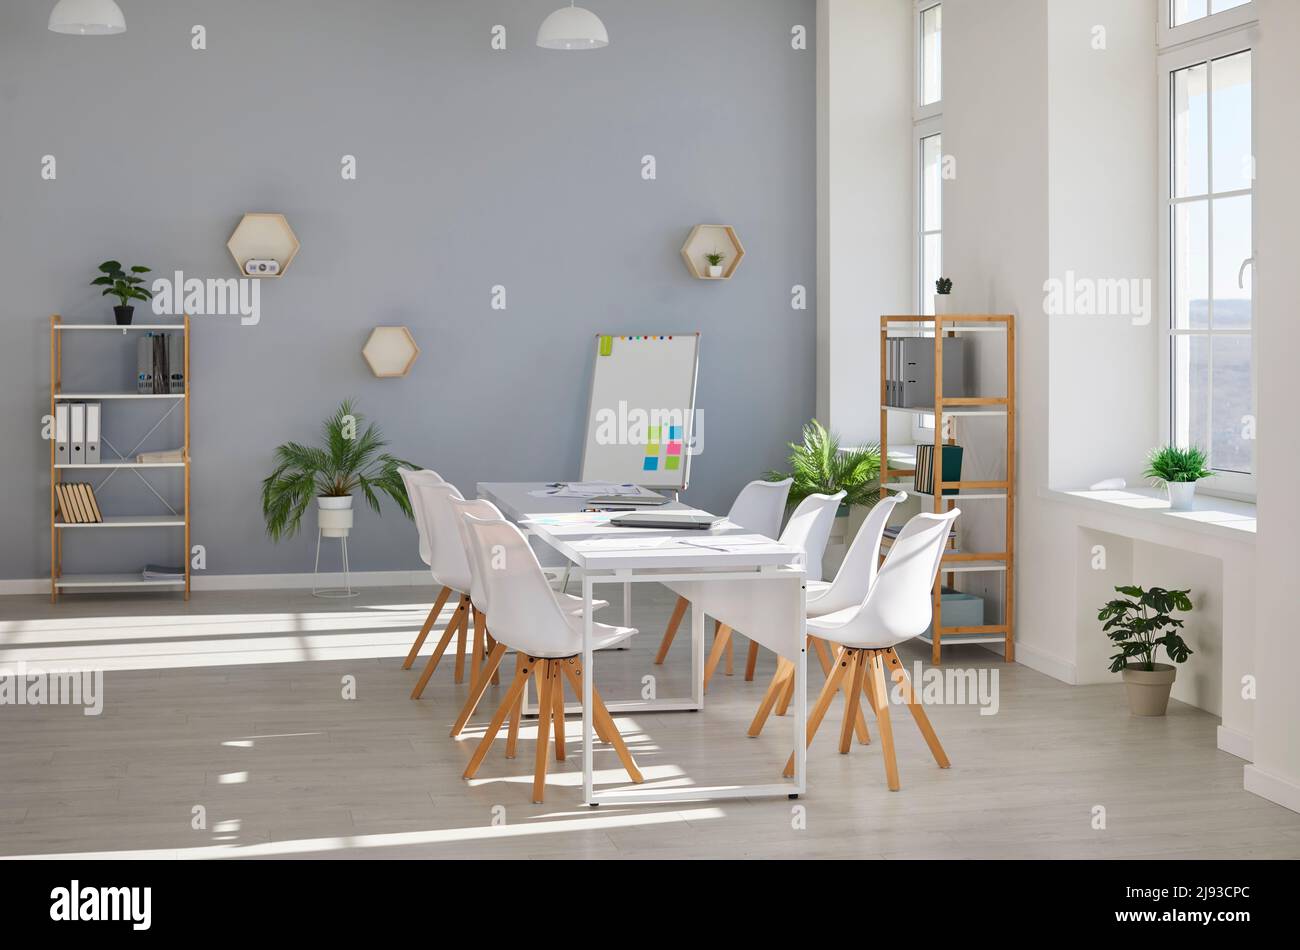 Modernes Bürointerieur mit Konferenztisch, Stühlen, Whiteboard, Regalen und Zimmerpflanzen Stockfoto